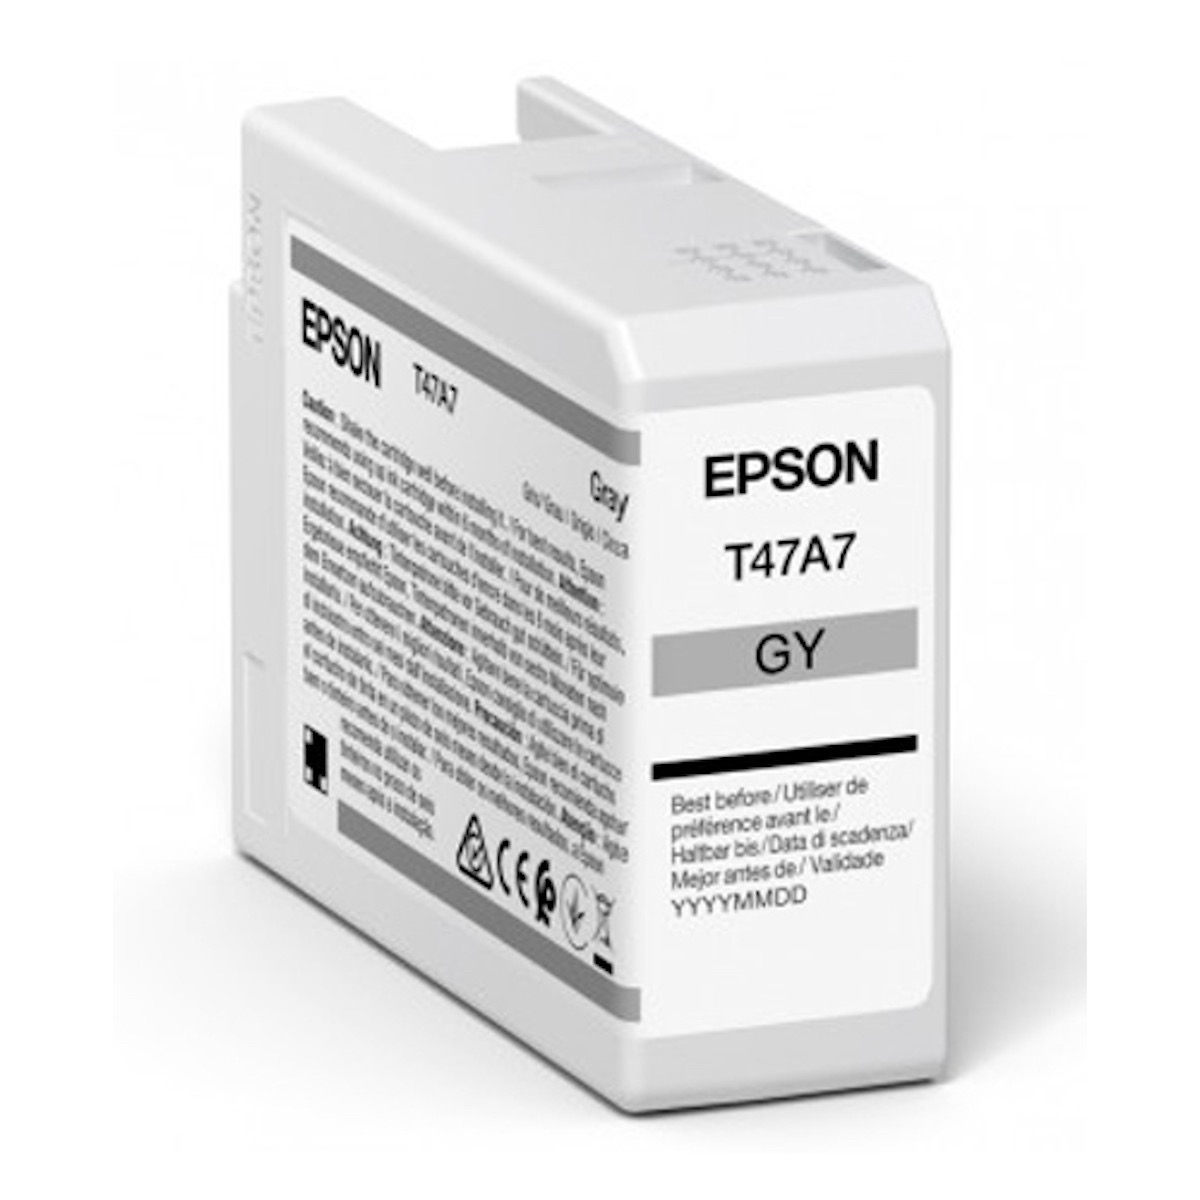 Epson T47A7 gray Tinte